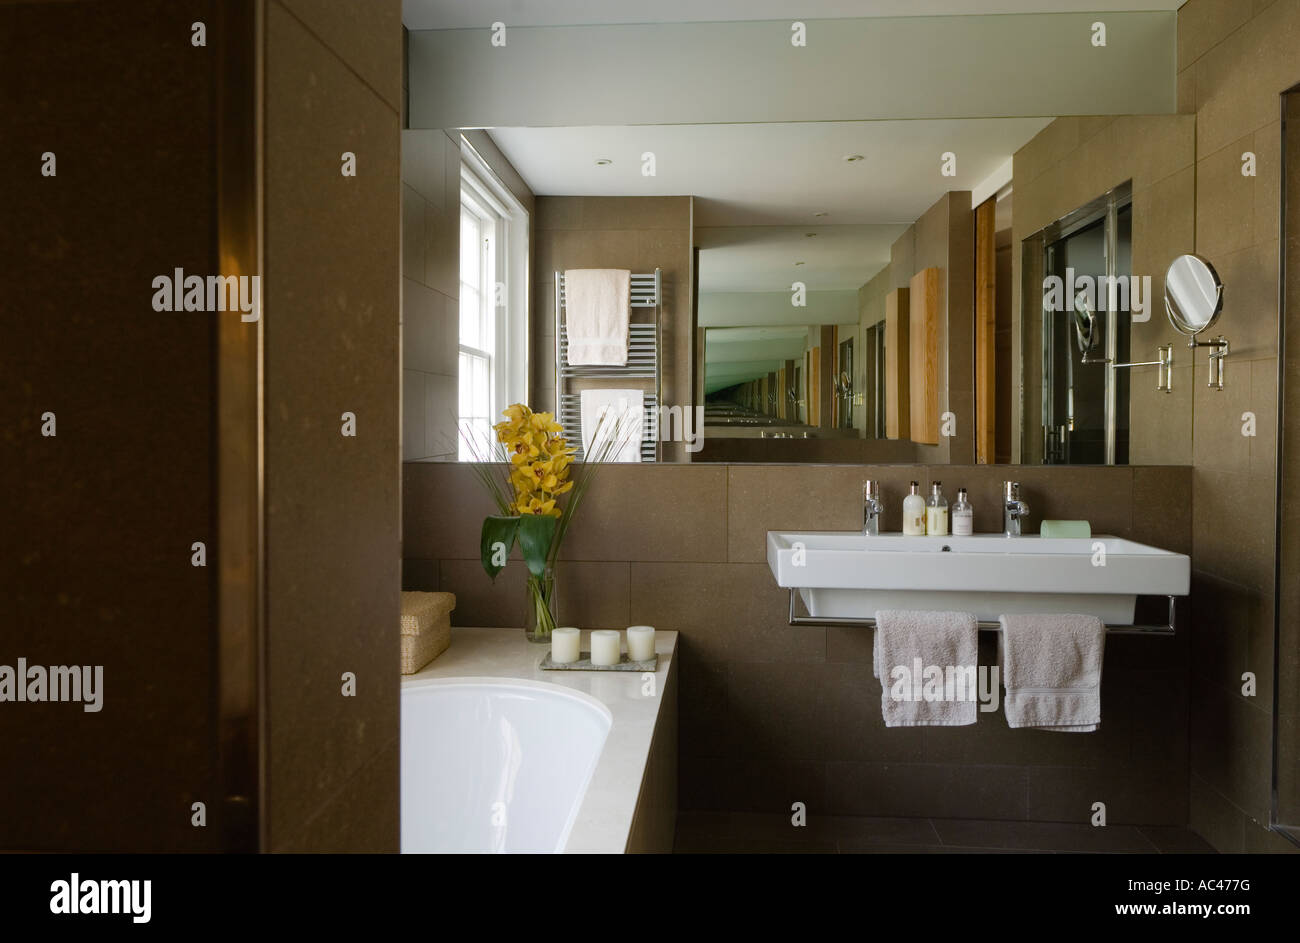 Baño modernista con un gran lavabo y grifos handsgrohe Foto de stock